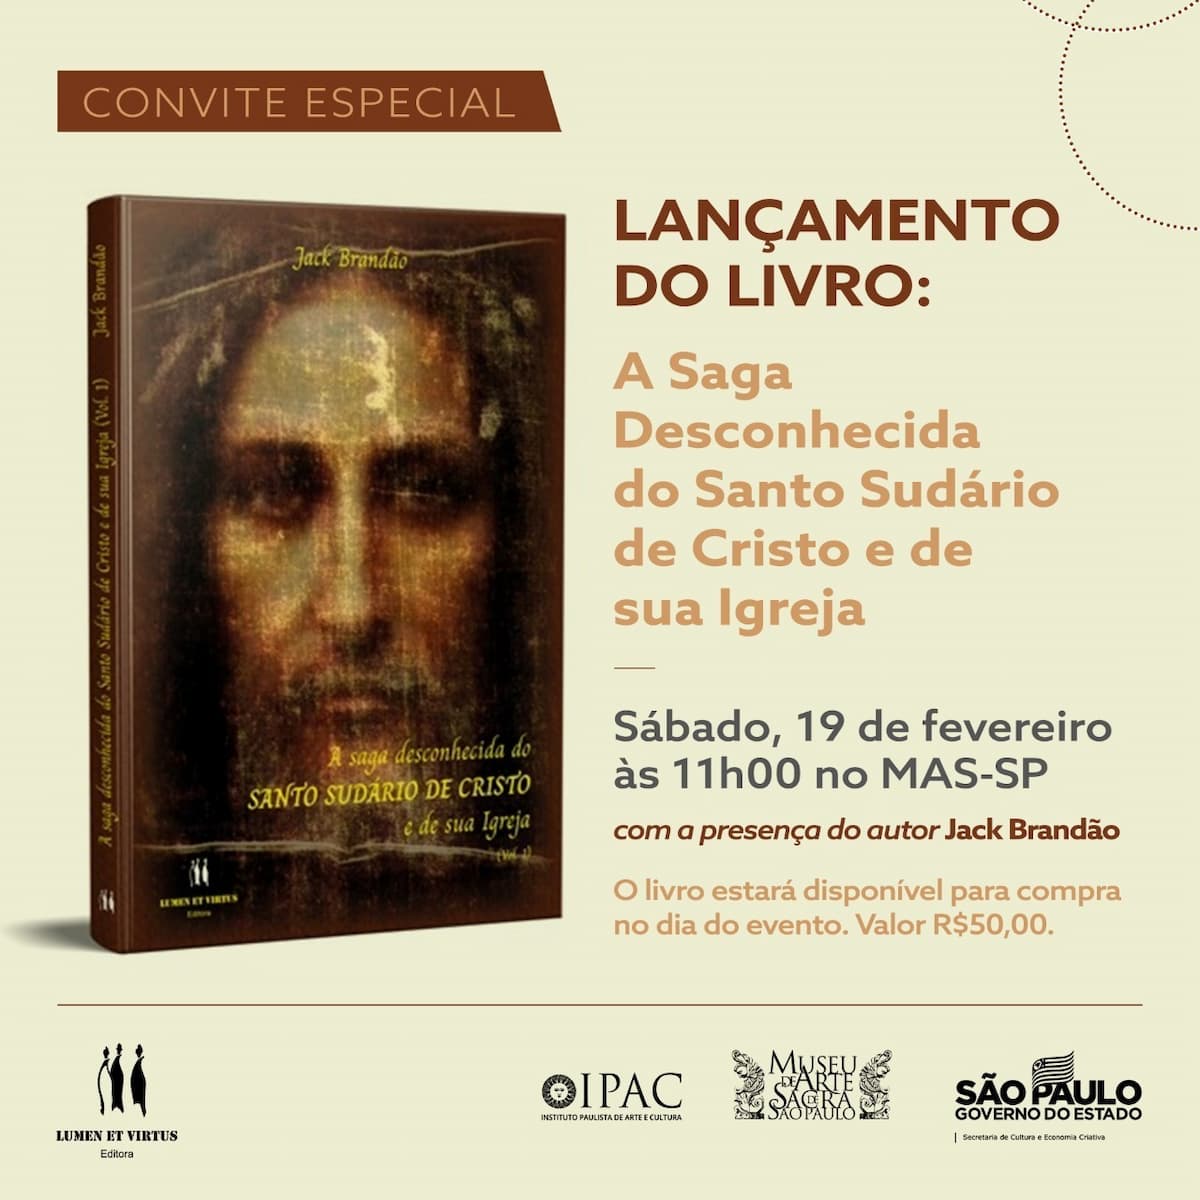 Livro "A saga desconhecida do SUDÁRIO DE CRISTO e de sua Igreja", ספר - כיסוי, הזמנה. גילוי.